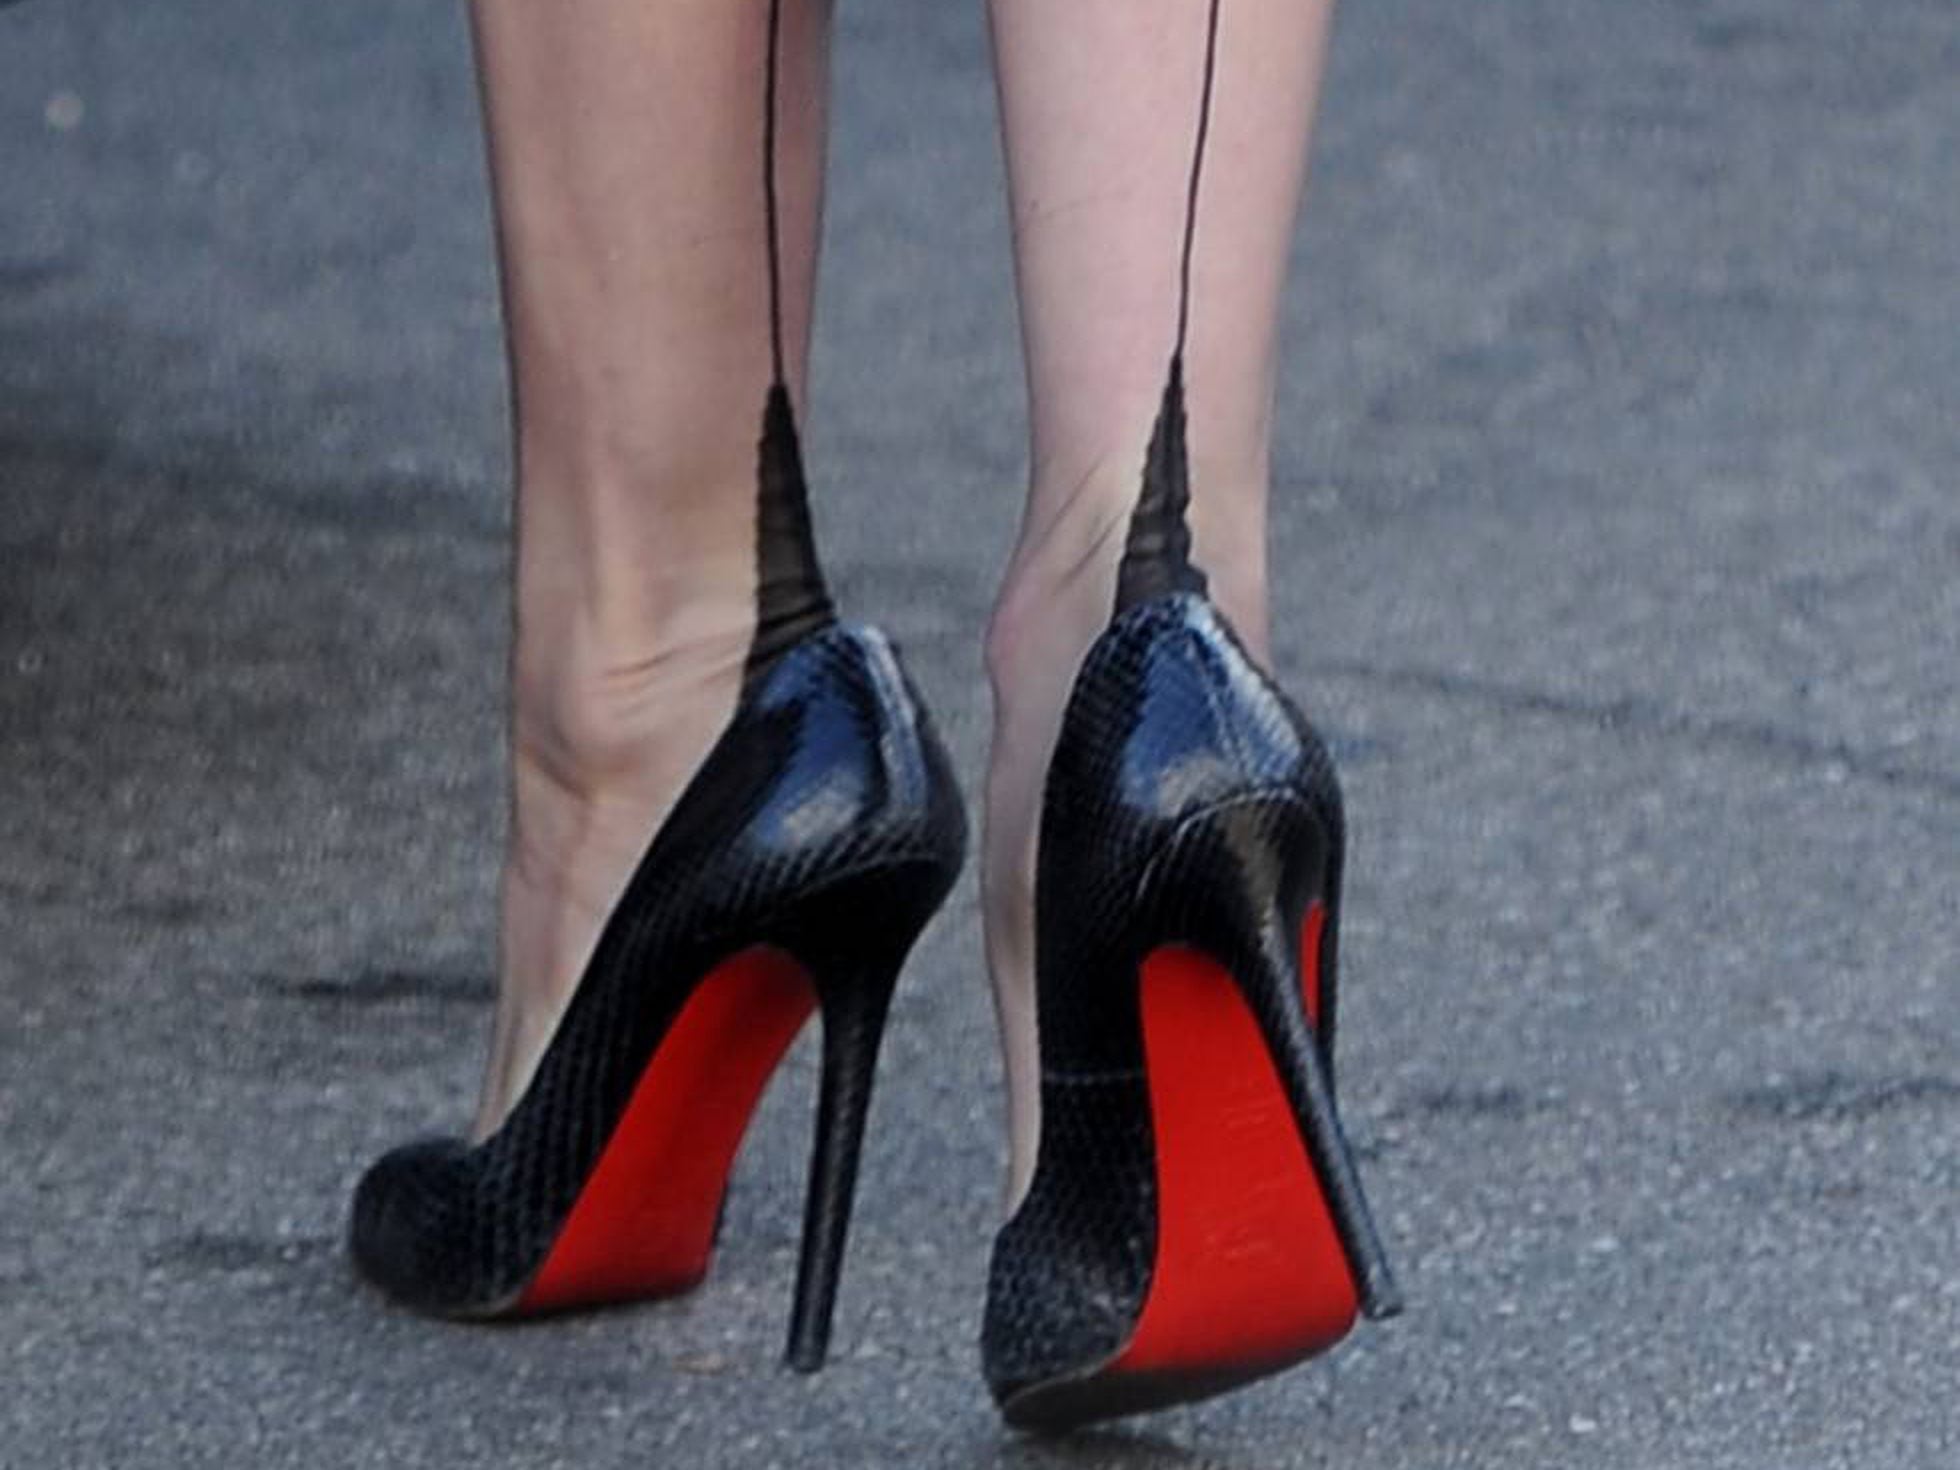 La europea reconoce la exclusividad de Louboutin para suelas rojas los zapatos | Estilo EL PAÍS